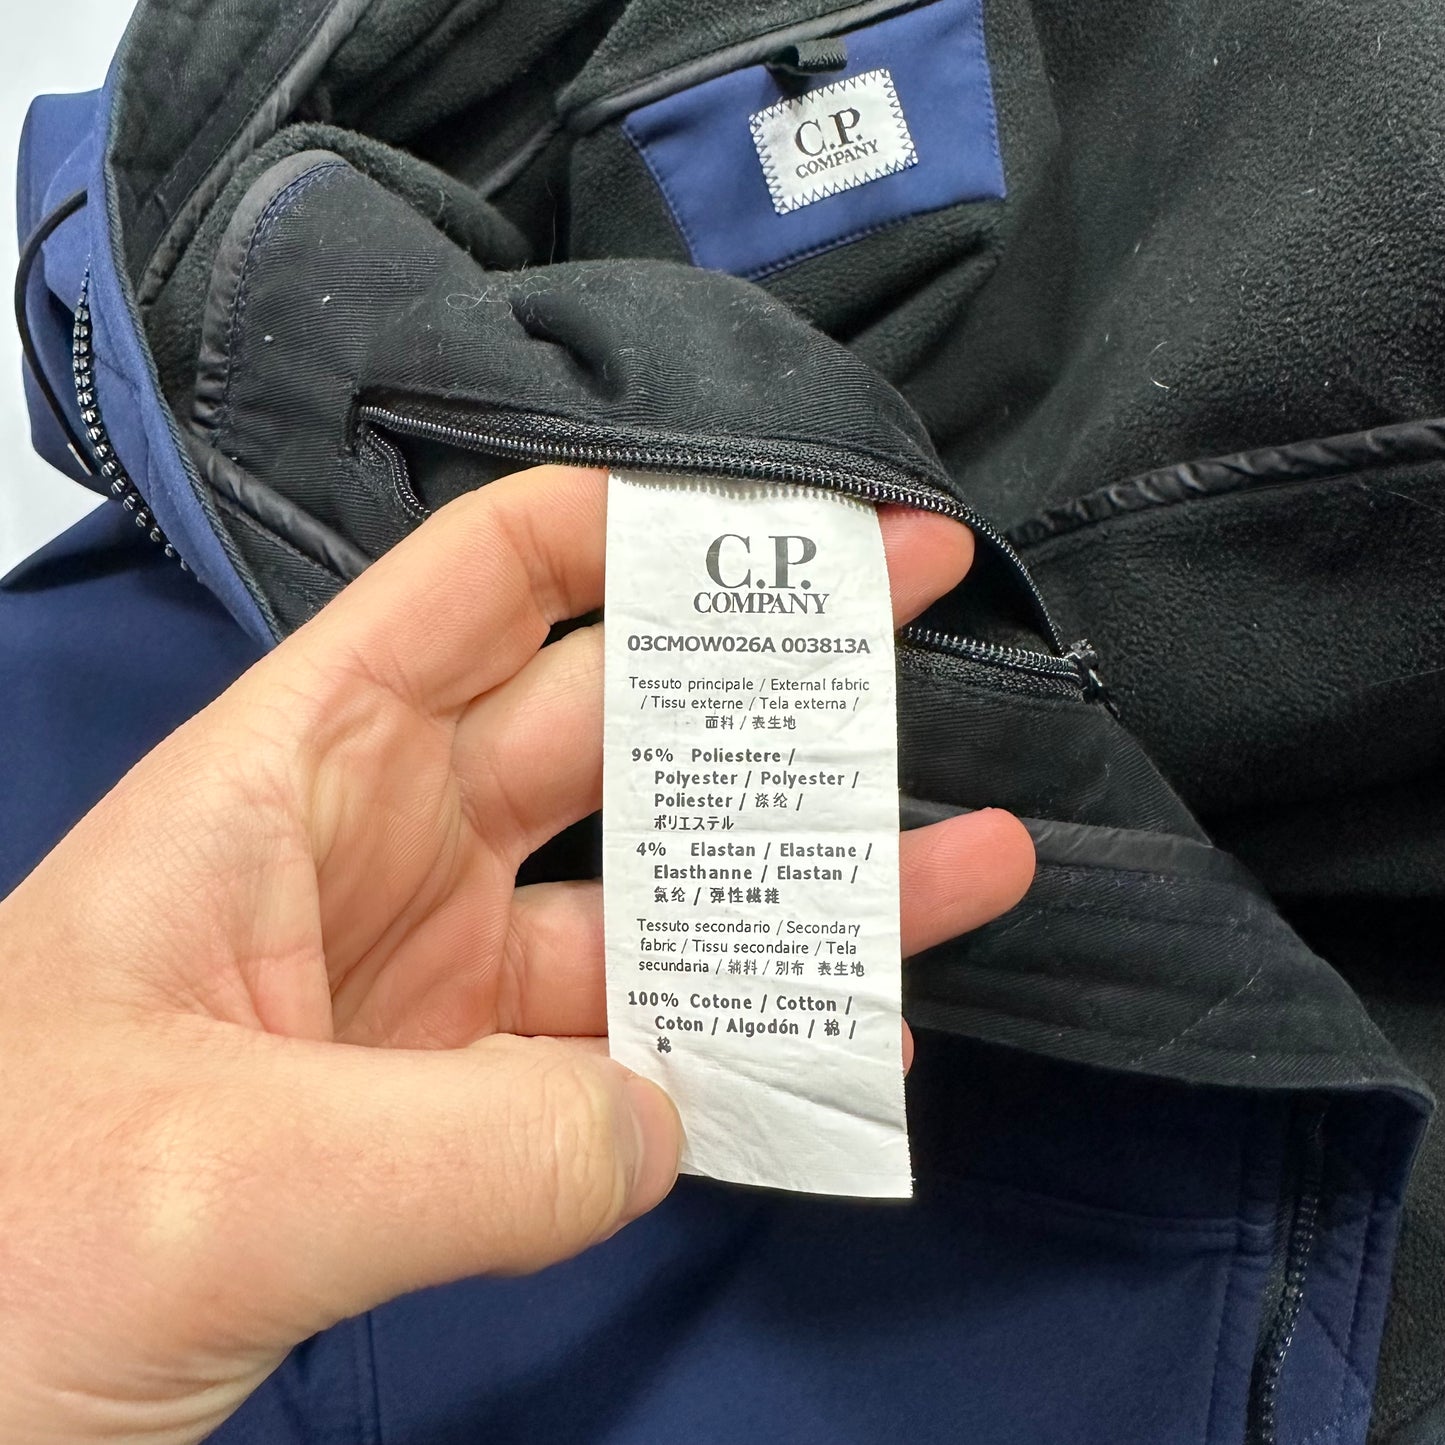 CP Company Soft Shell Goggle Jacket - XL